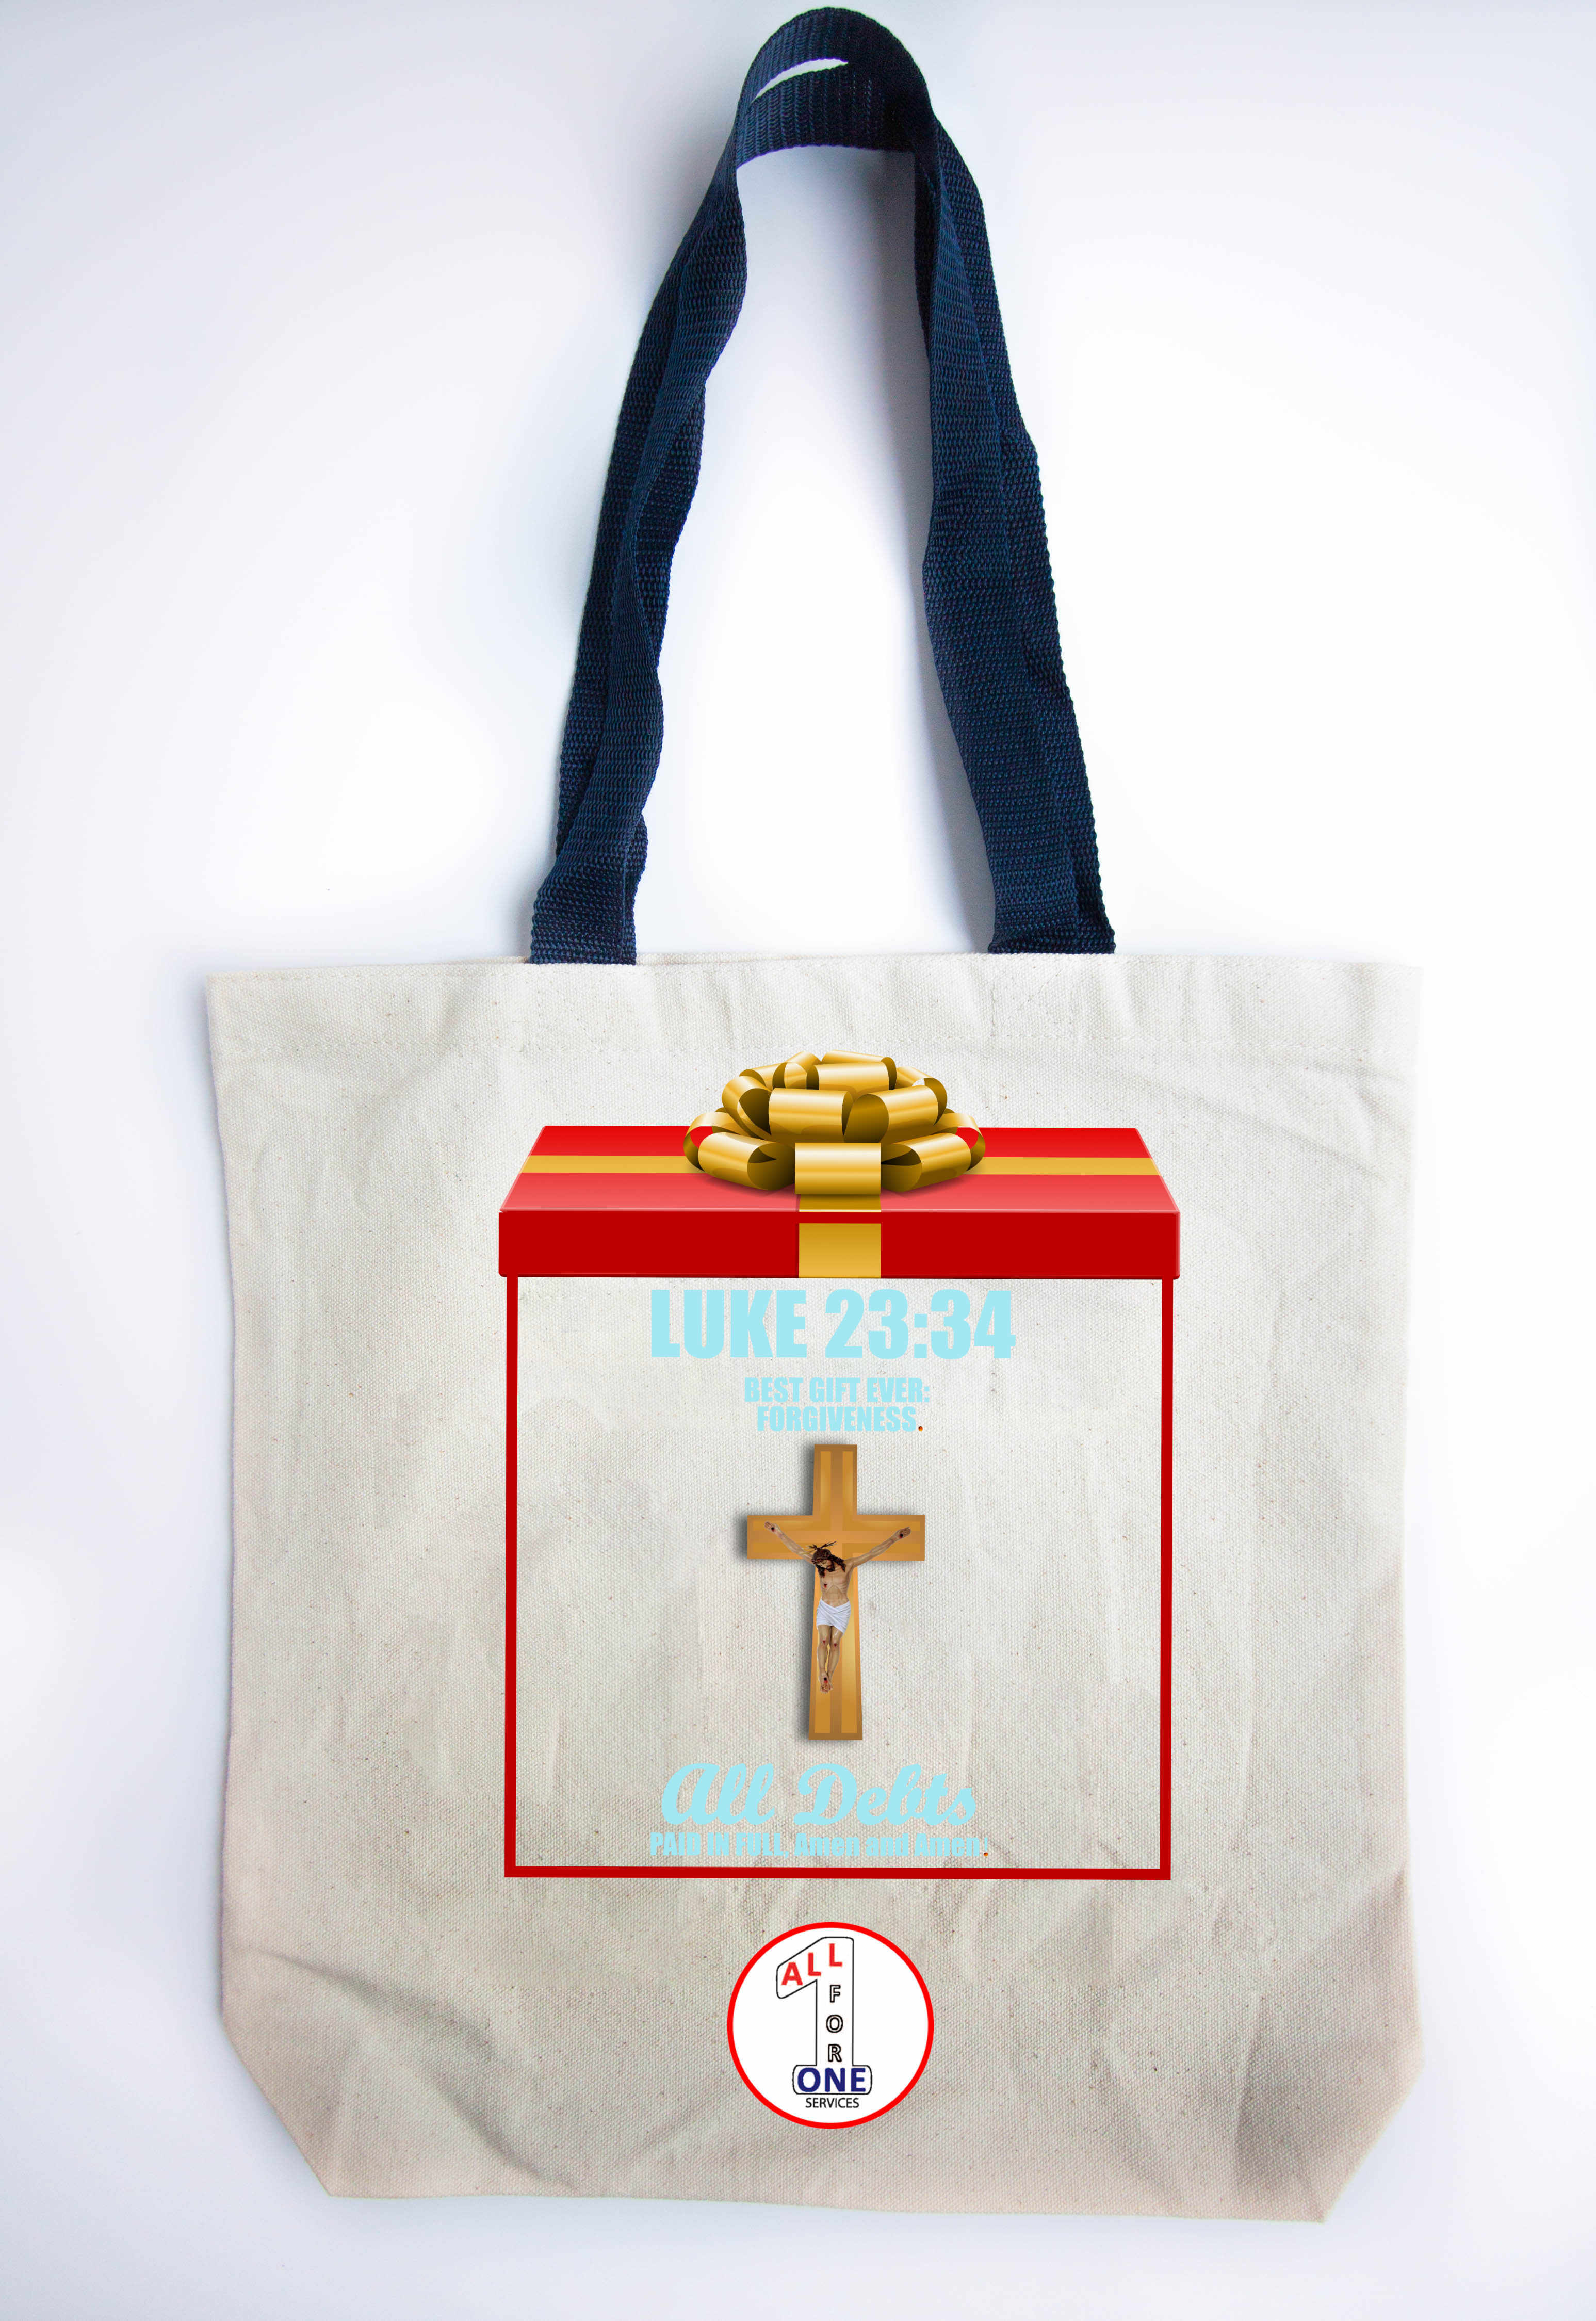 Luke 23:34 Tote Bag